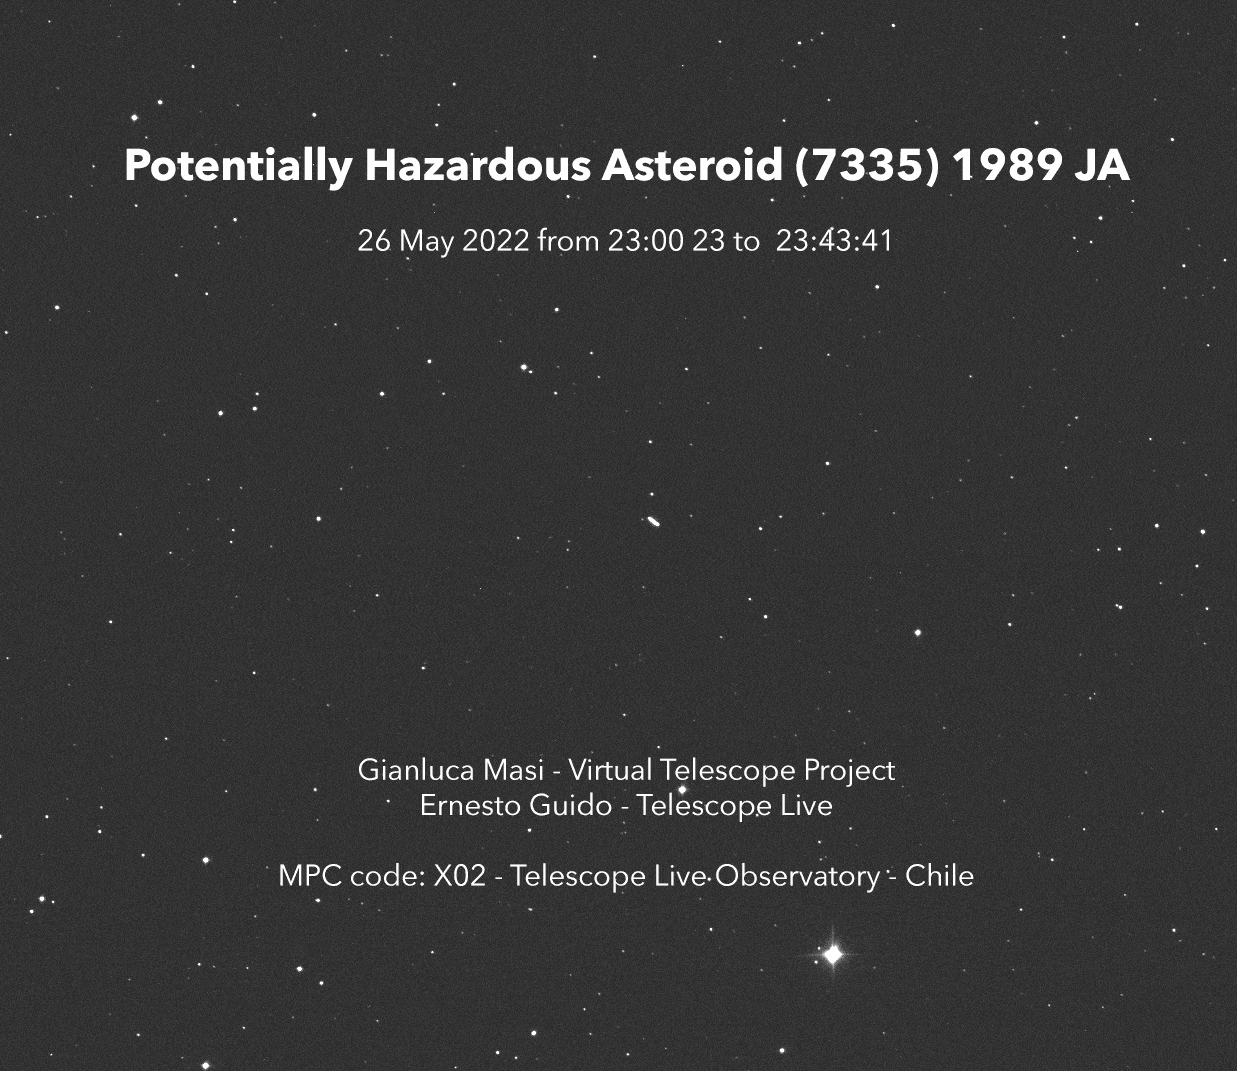 버추얼 텔레스코프 프로젝트(The Virtual Telescope Project)에 포착된 ‘7335’(이하 1989 JA)의 모습